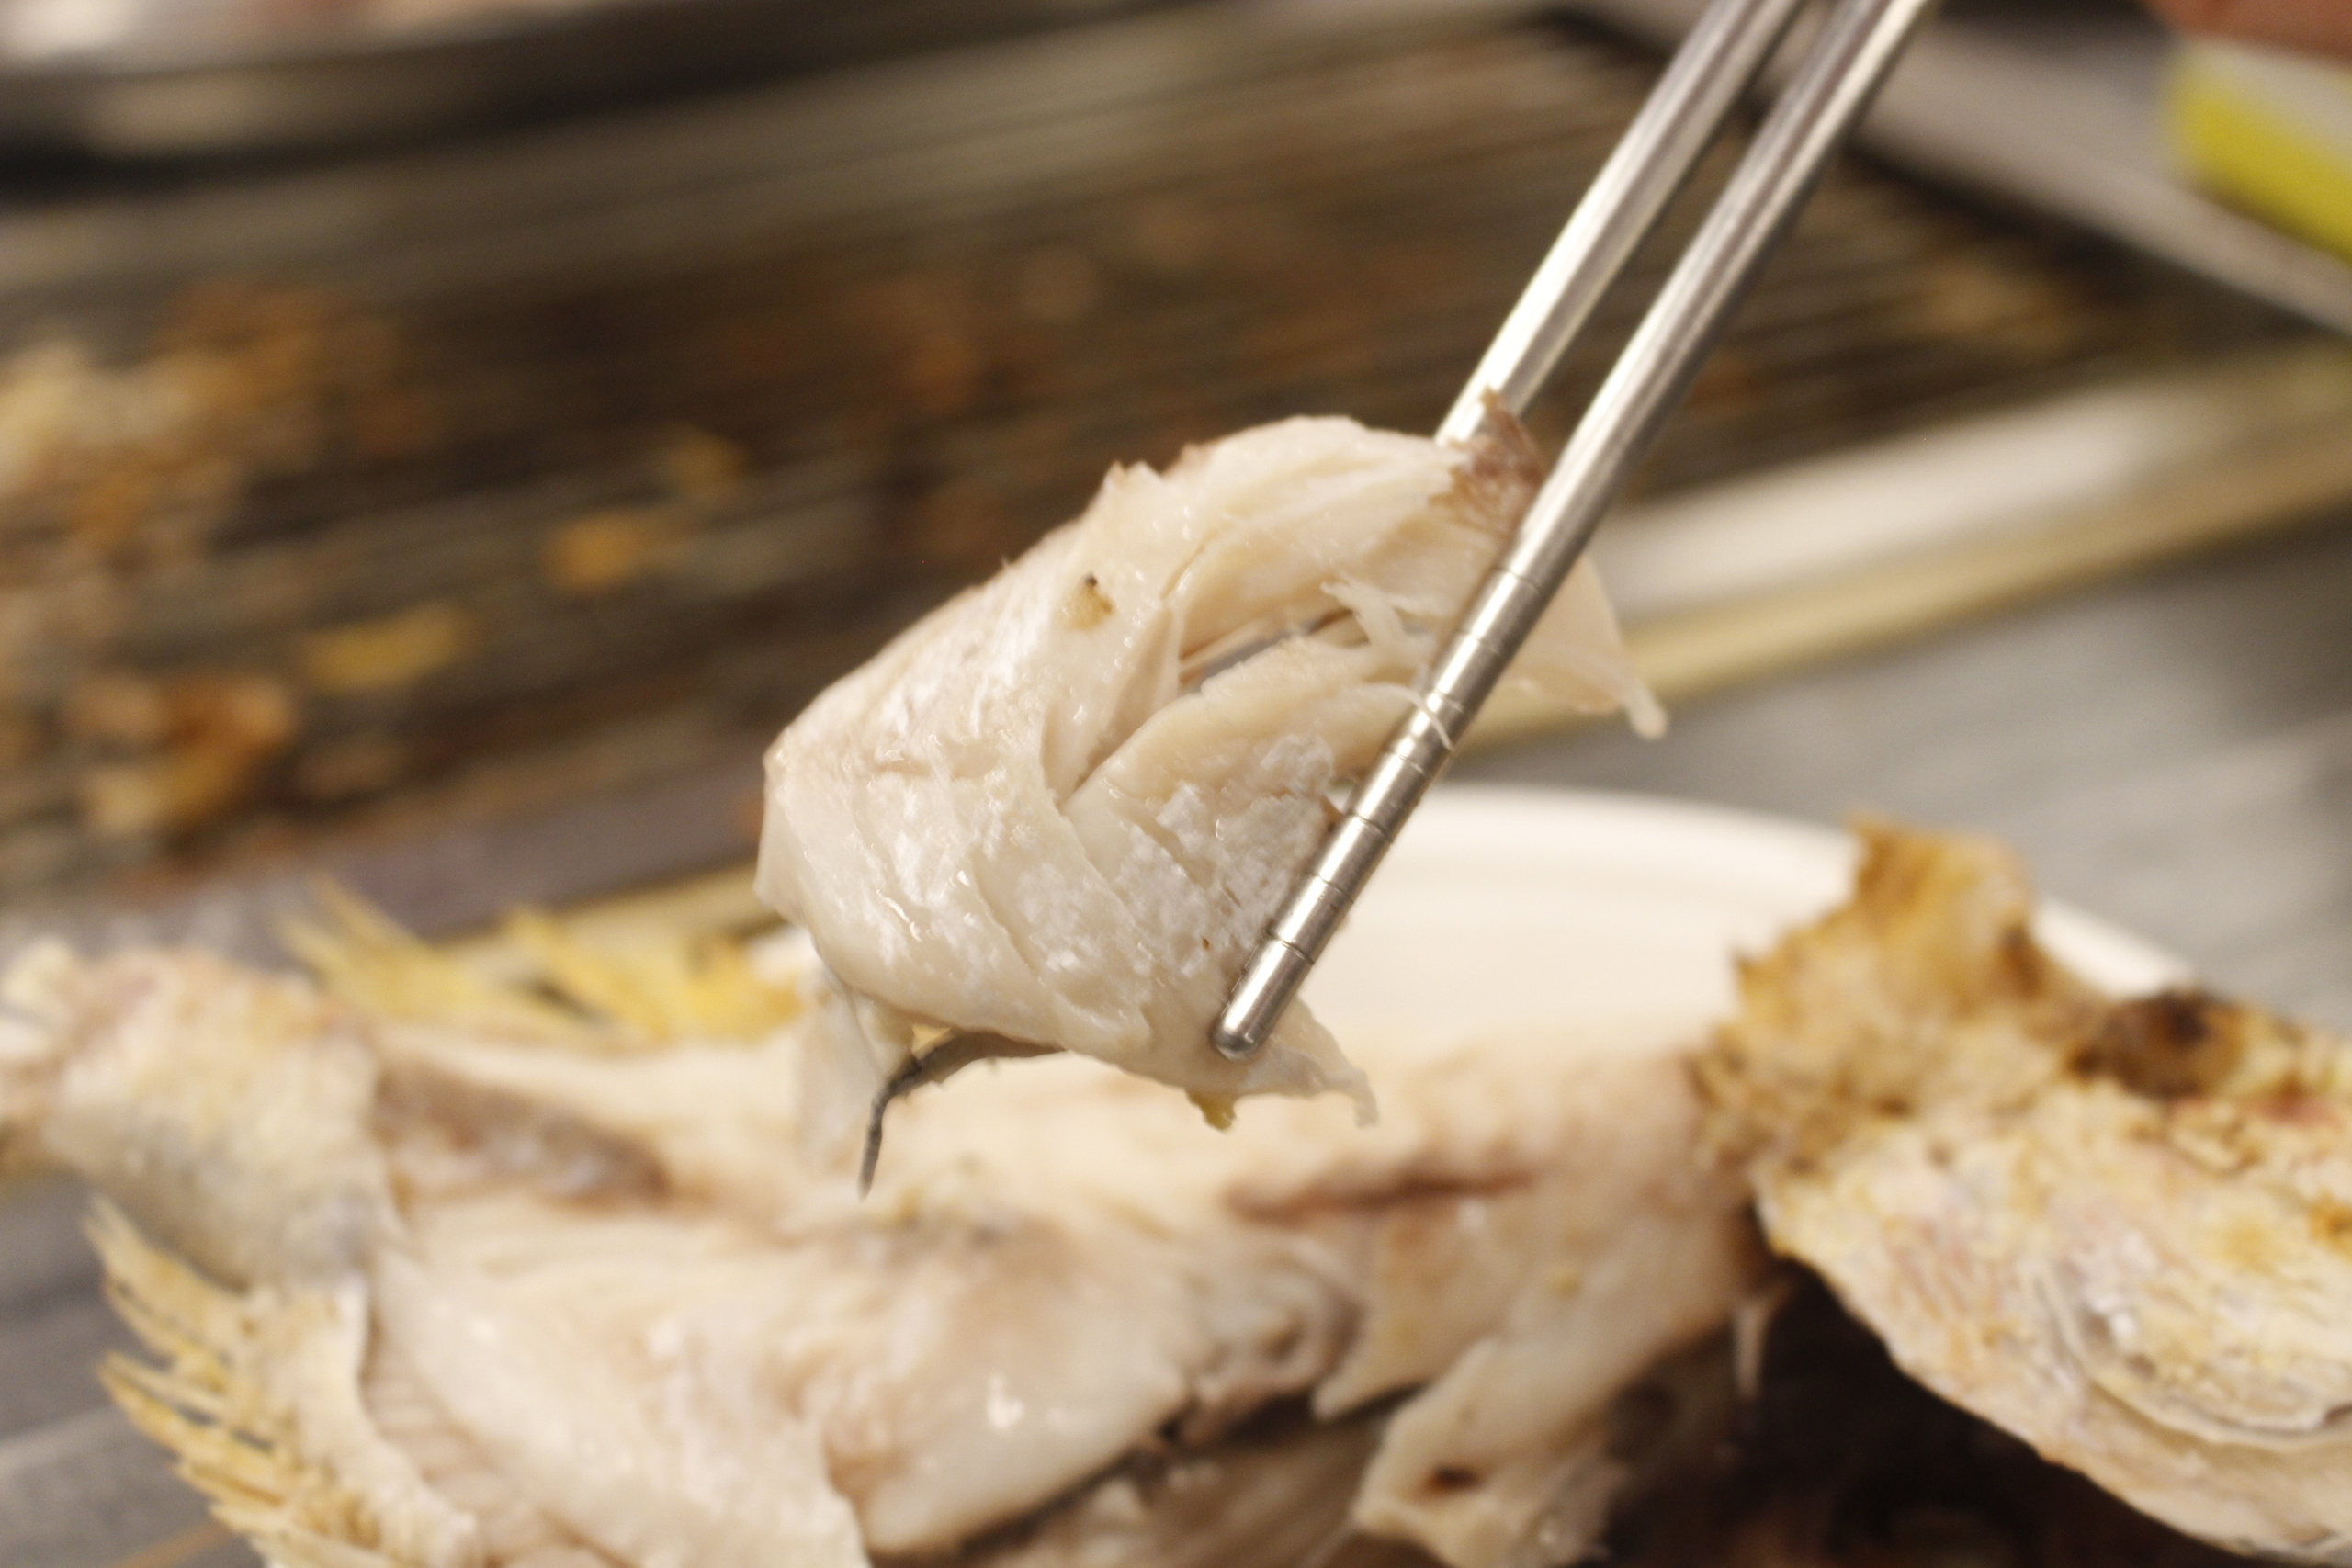 【桃園 海寶城】新增現撈仔「水道泰國蝦」無限吃到飽.海鮮碳烤火烤兩吃讓你吃到翻過去